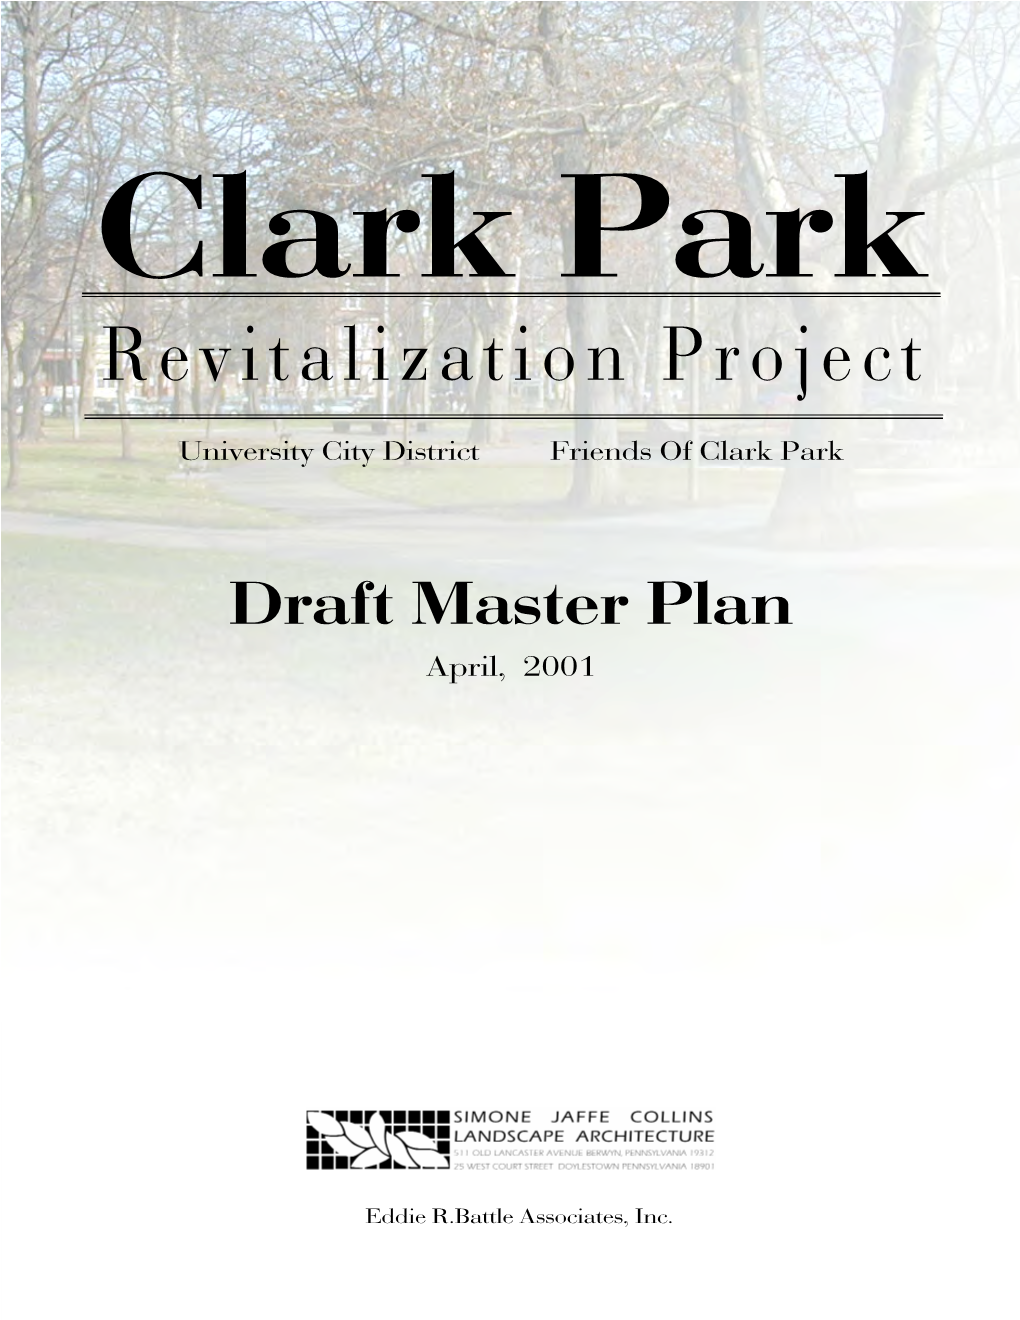 Revitalization Project